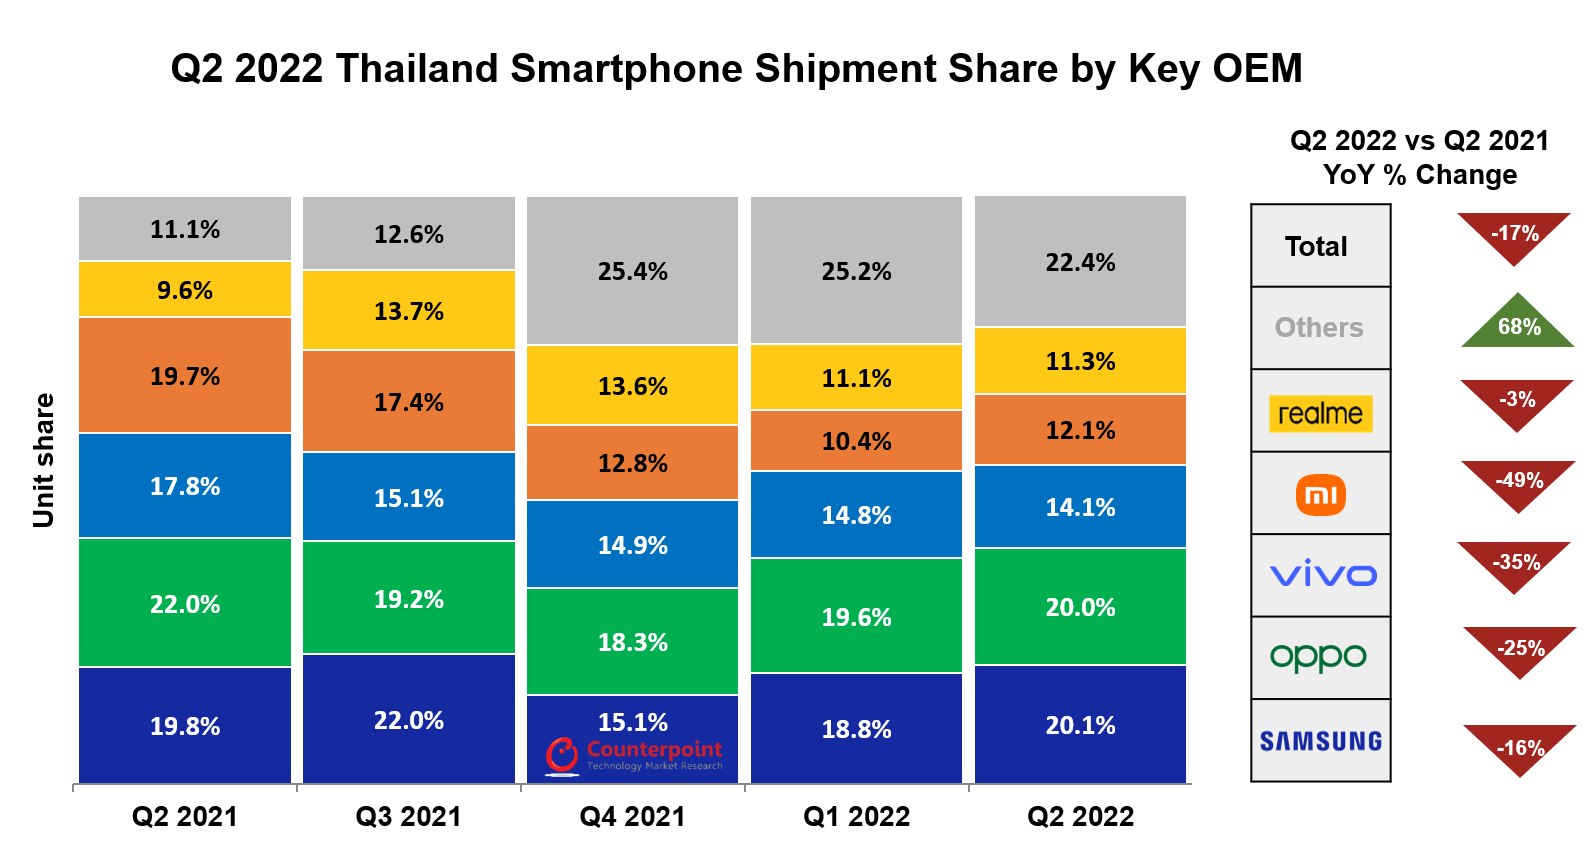 ตลาดสมาร์ตโฟนระดับพรีเมียมของประเทศไทยเติบโต 22 ในไตรมาสที่ 2 ปี 2022 แม้ว่าการจัดส่งโดยรวมจะลดลง 17